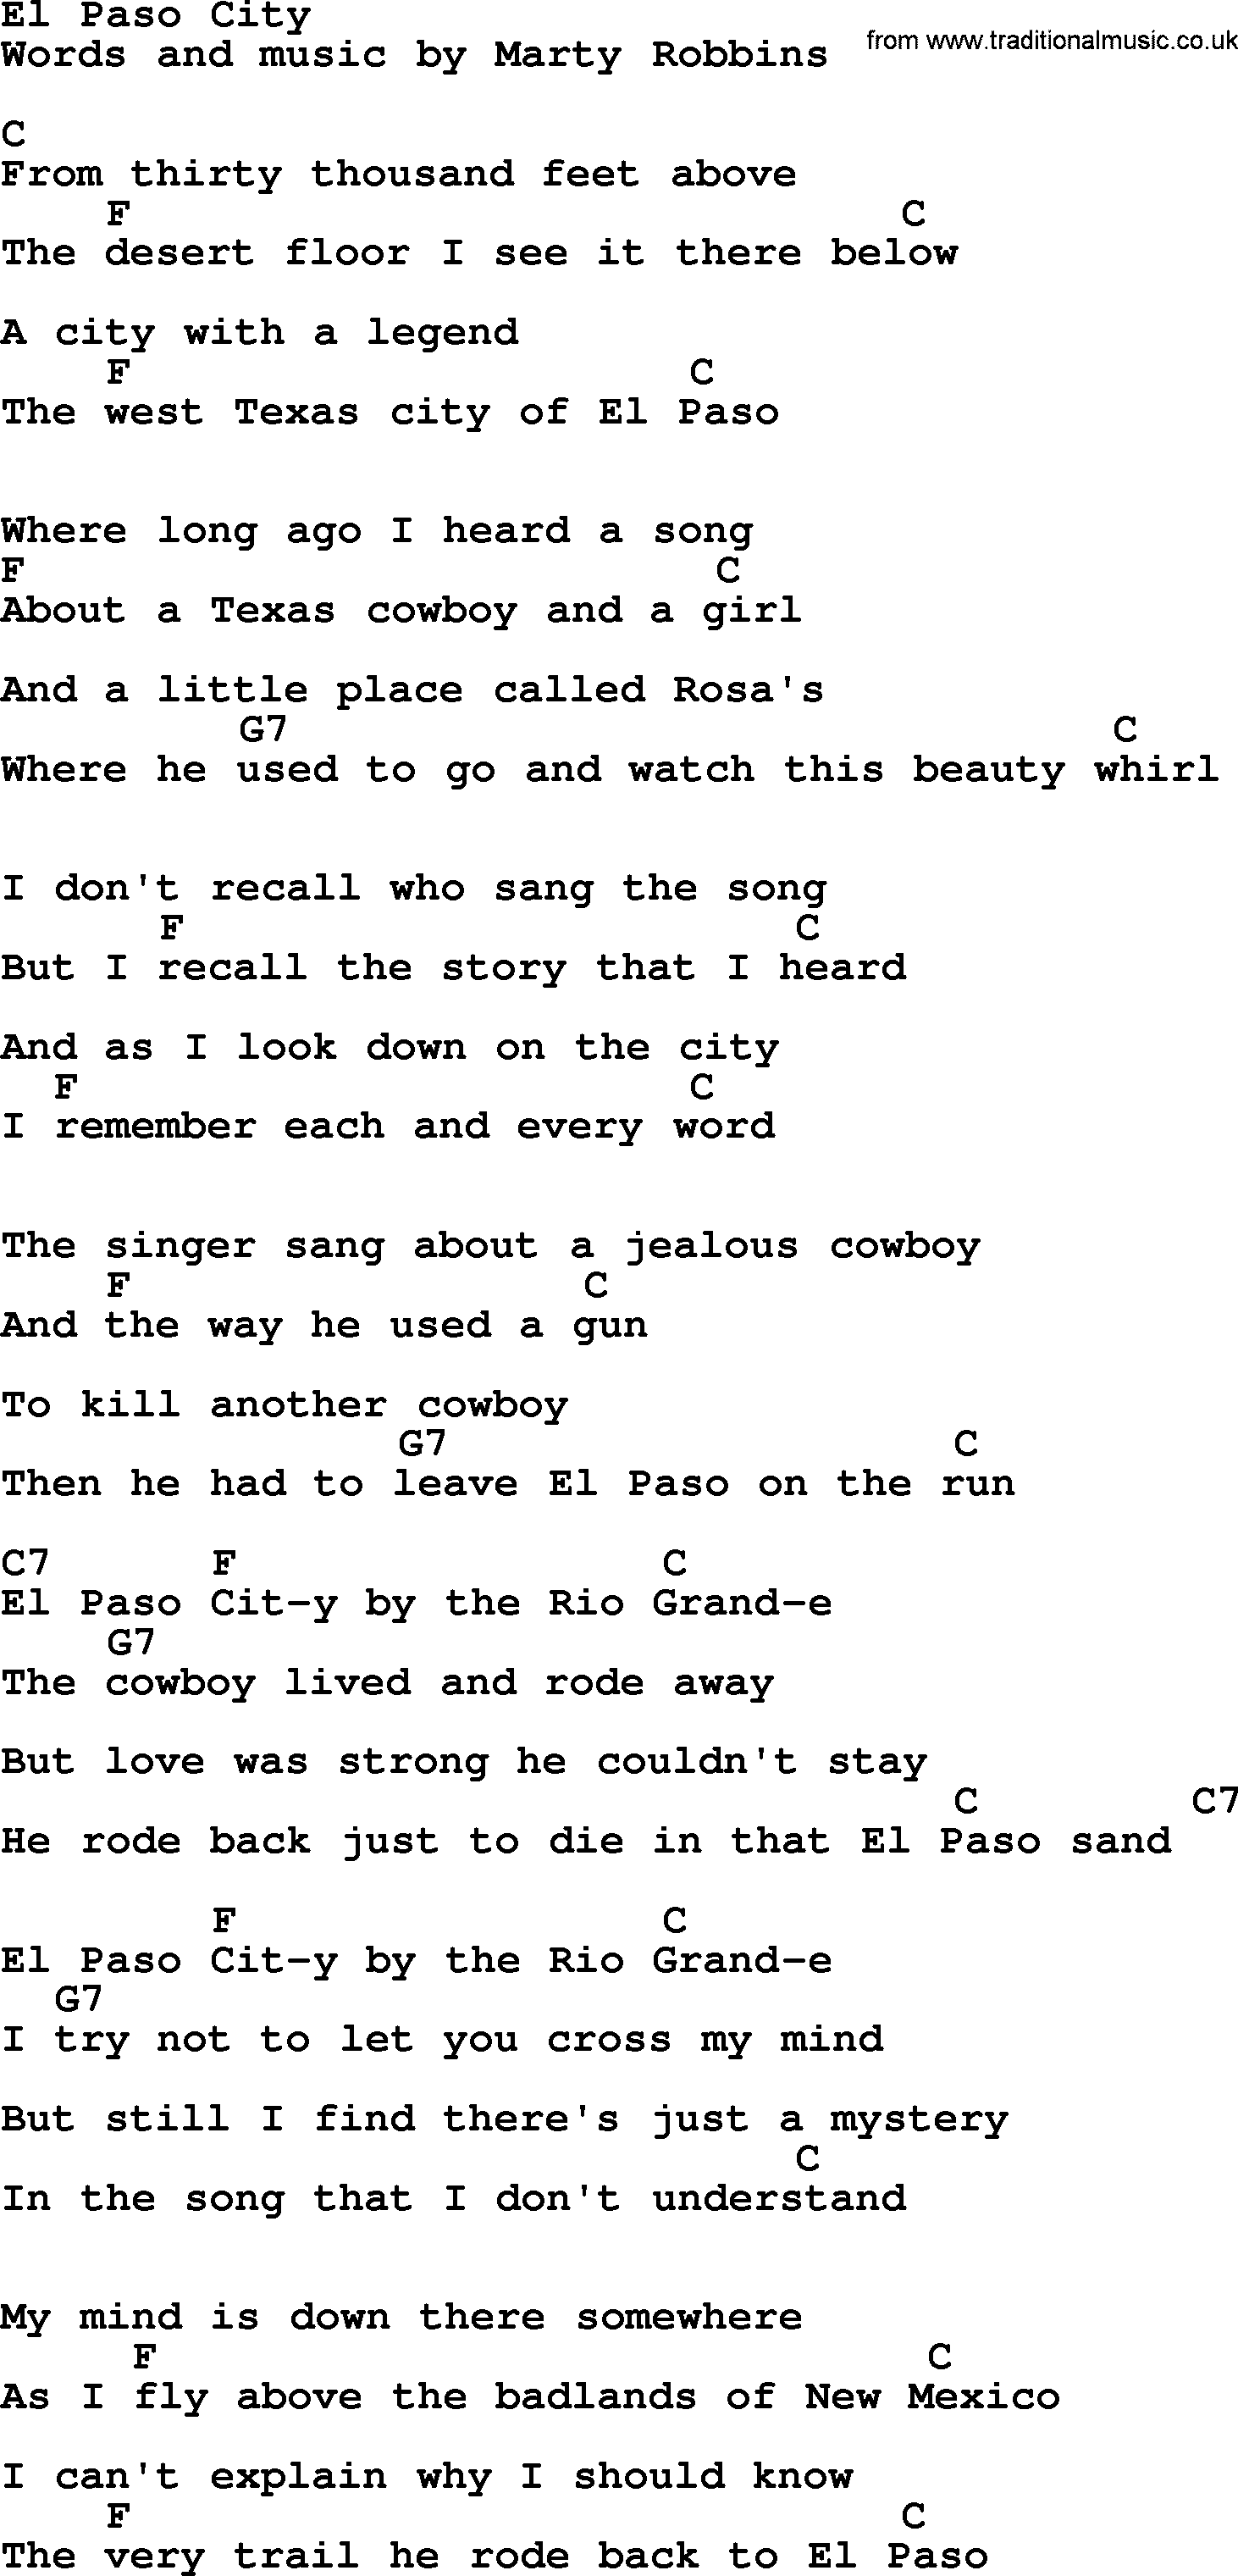 Marty Robbins song: El Paso City, lyrics and chords